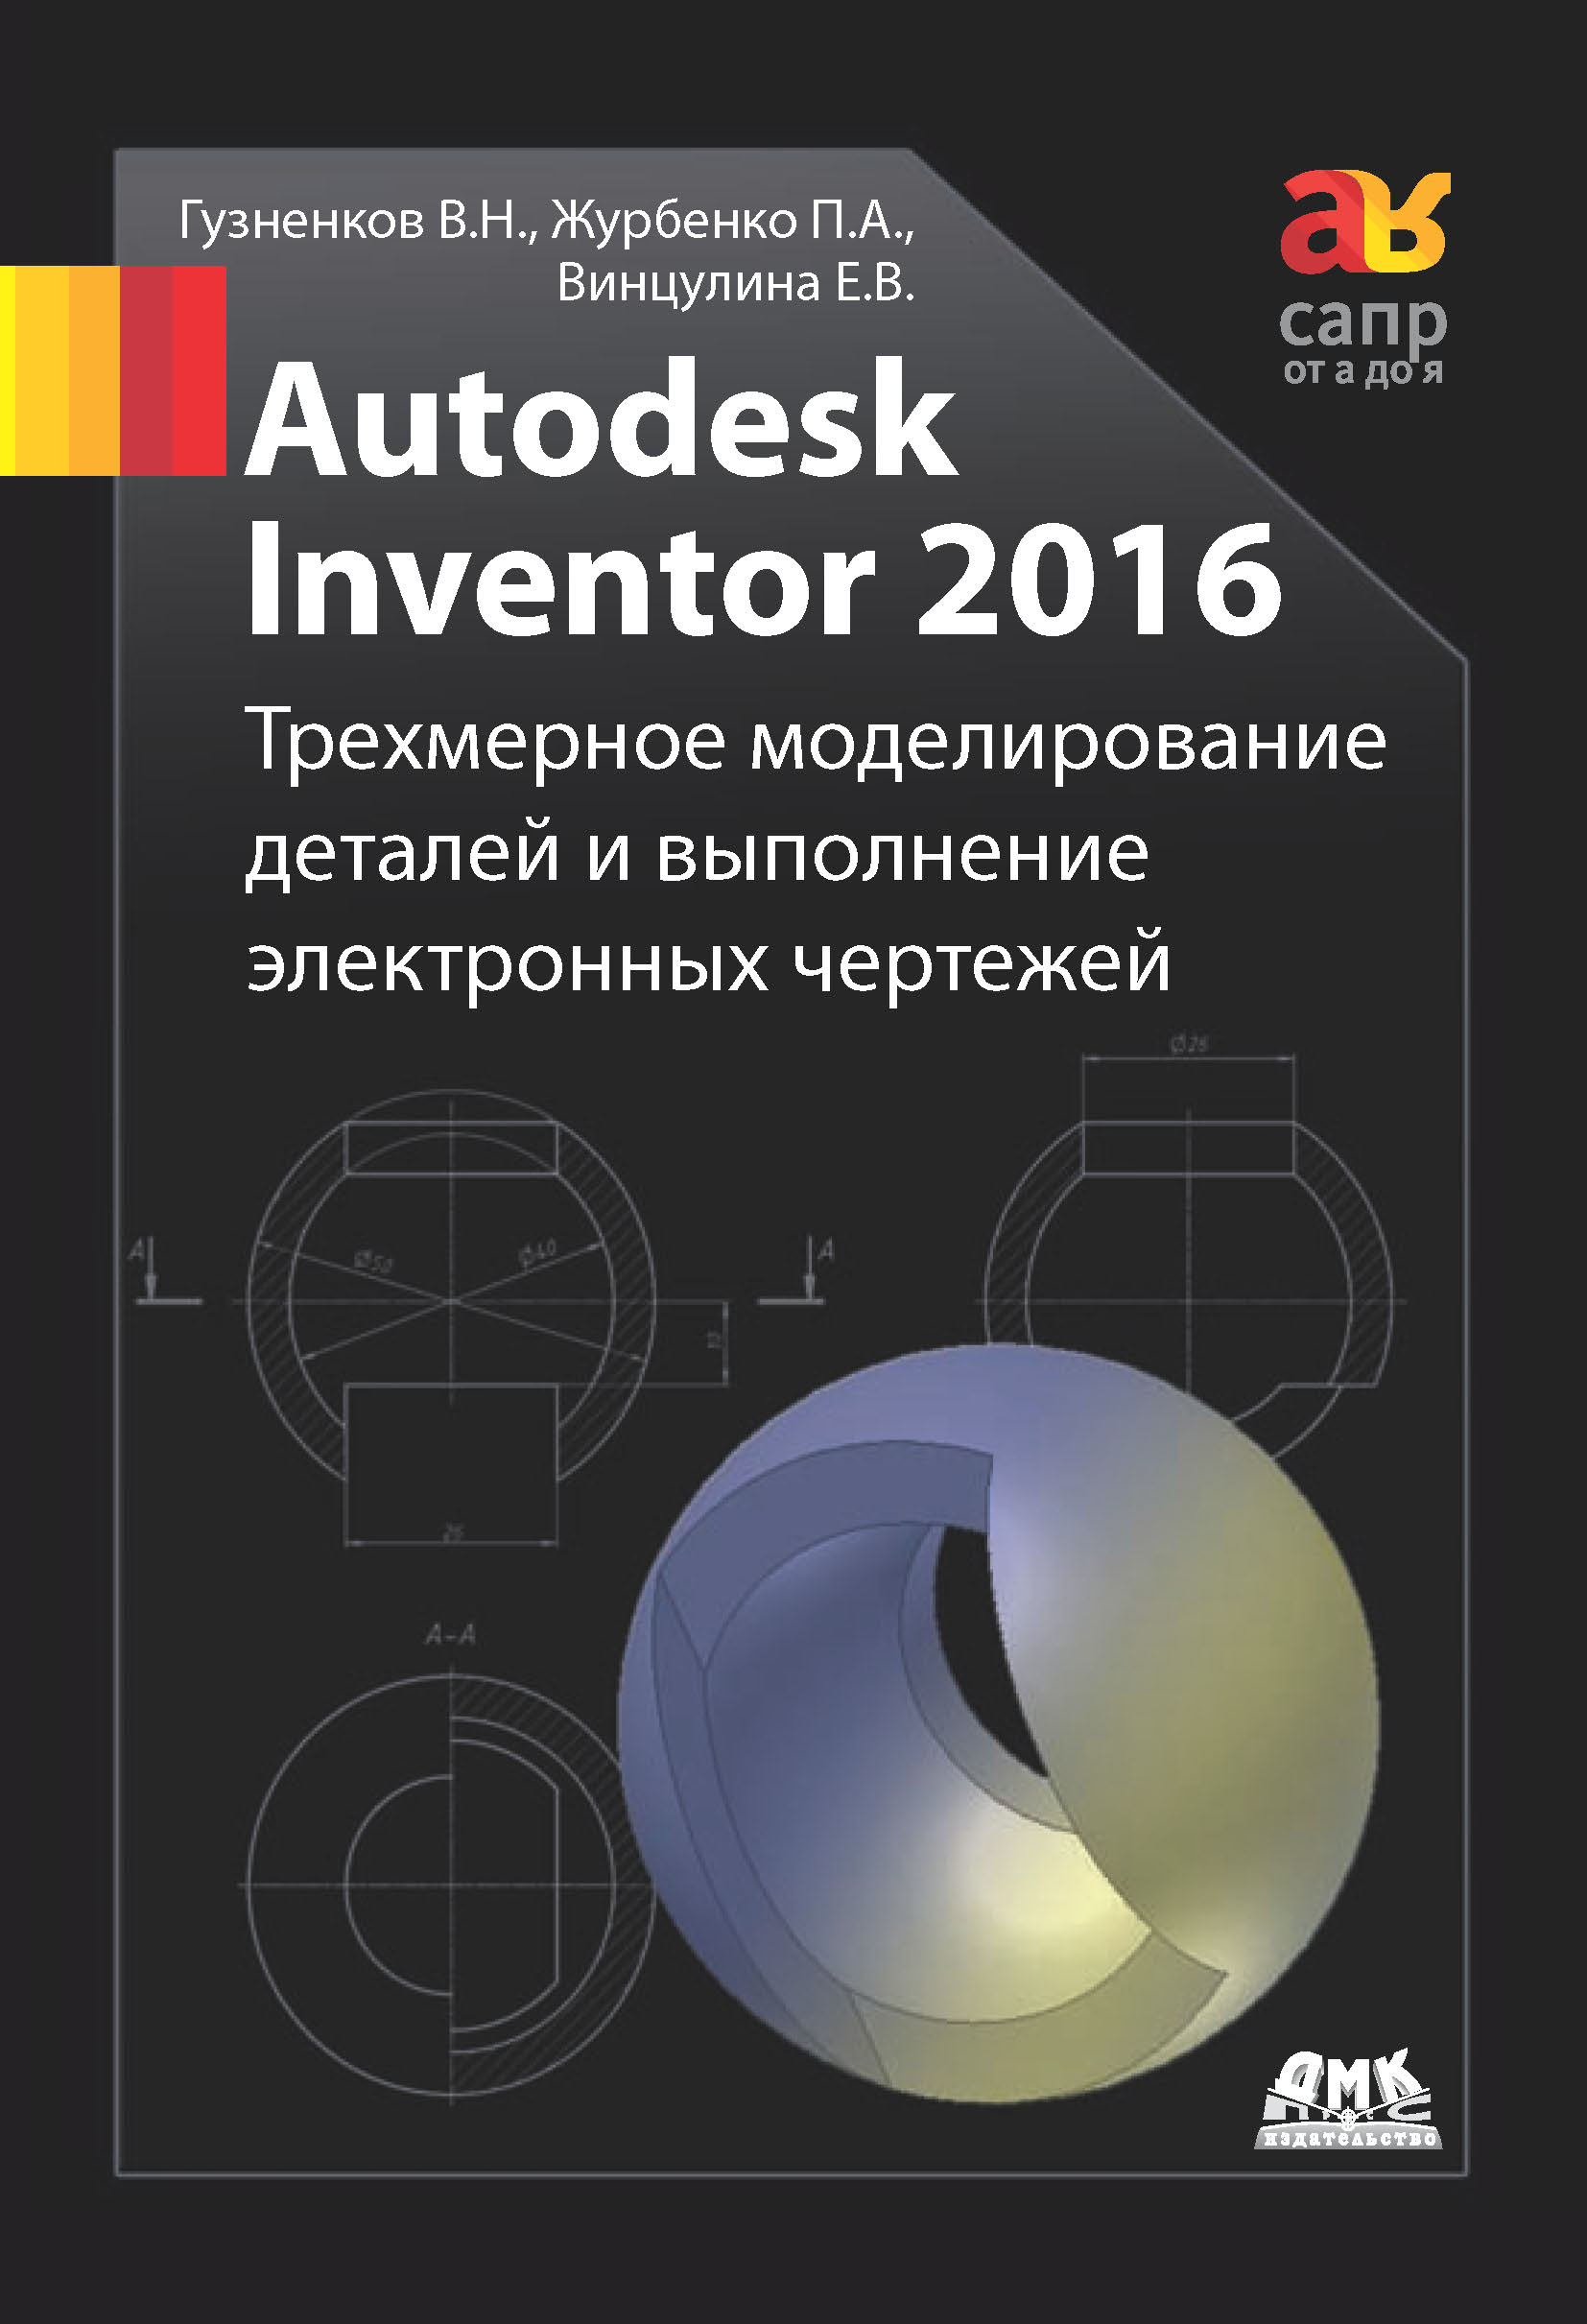 Autodesk Inventor 2016.Трёхмерное моделирование деталей и выполнение электронных чертежей